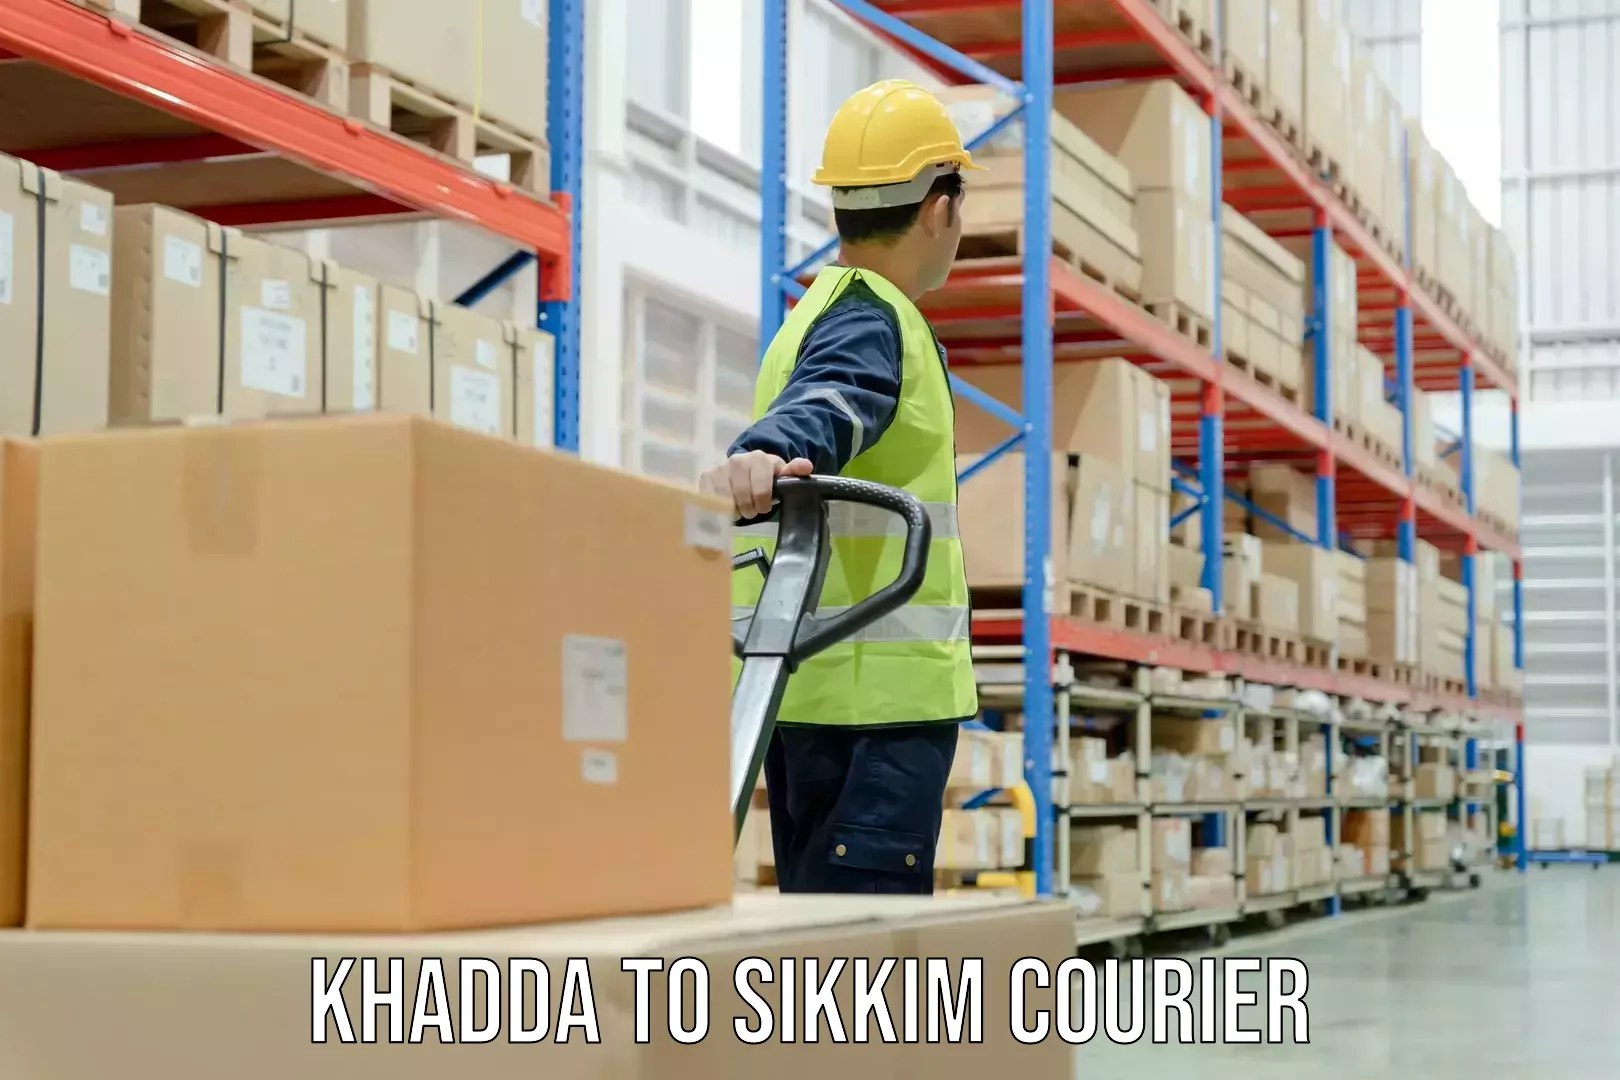 User-friendly courier app Khadda to Mangan